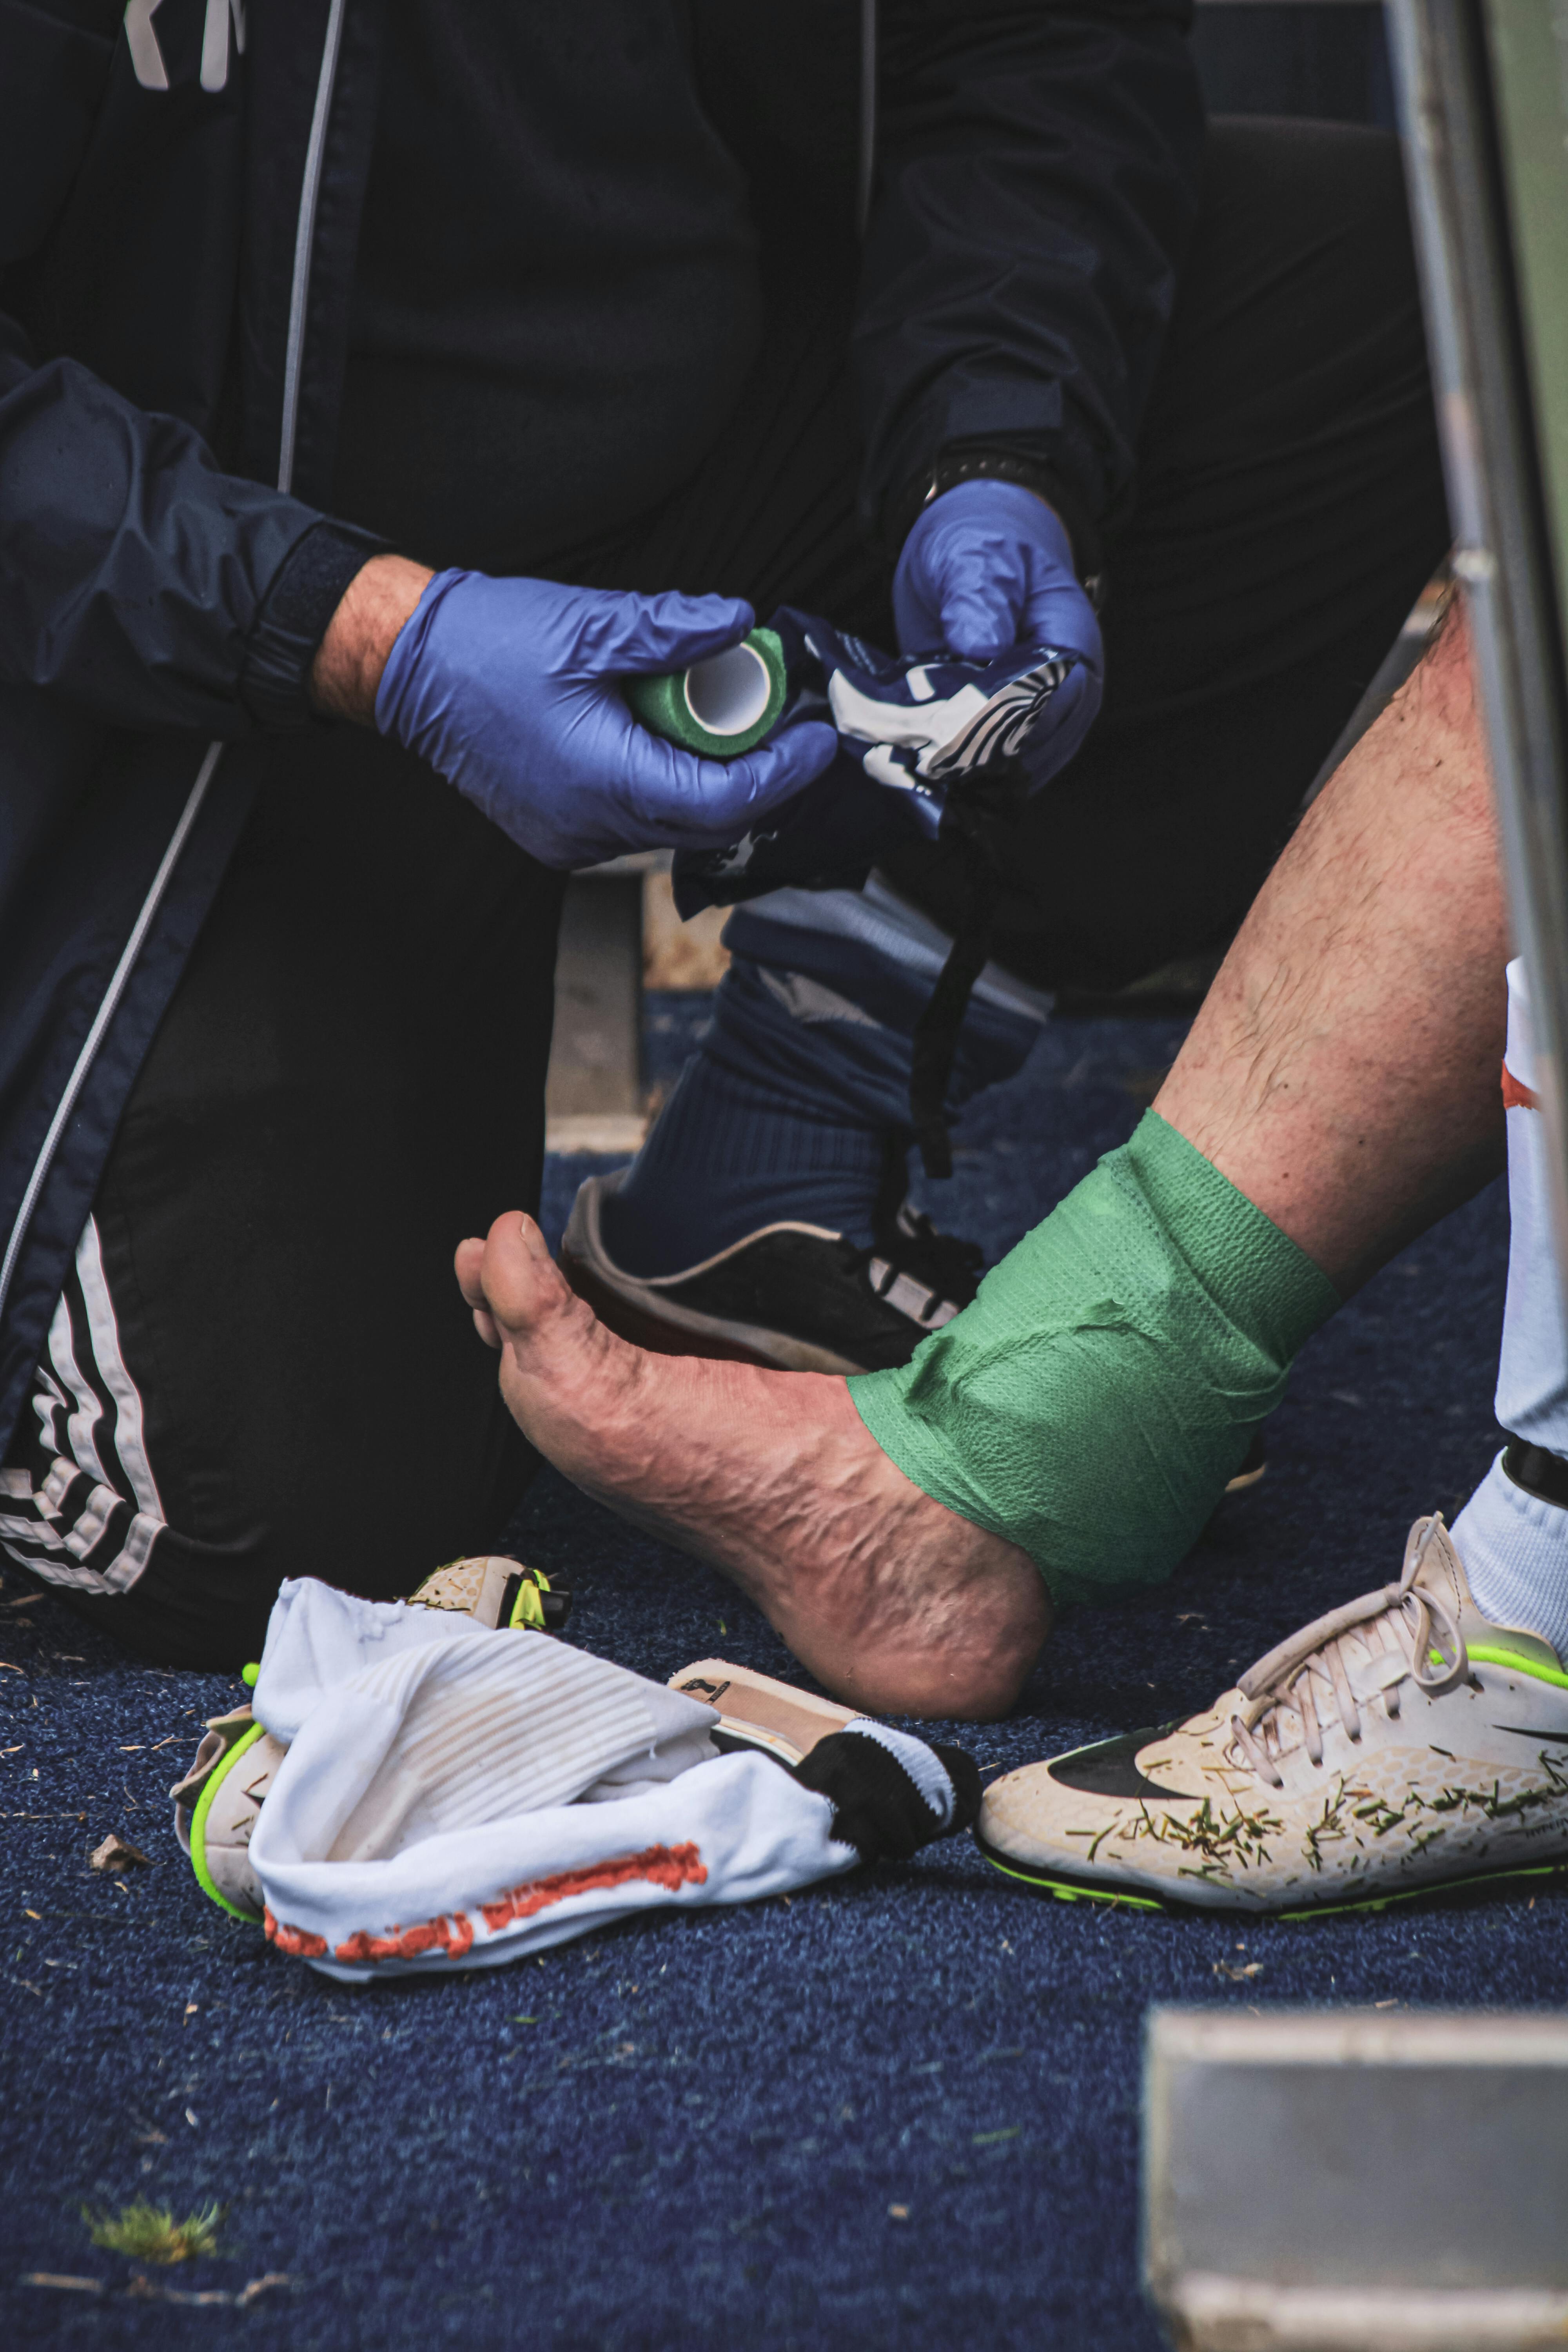 Ein Mann hilft einem Spieler bei einer Verletzung. | Quelle: Pexels